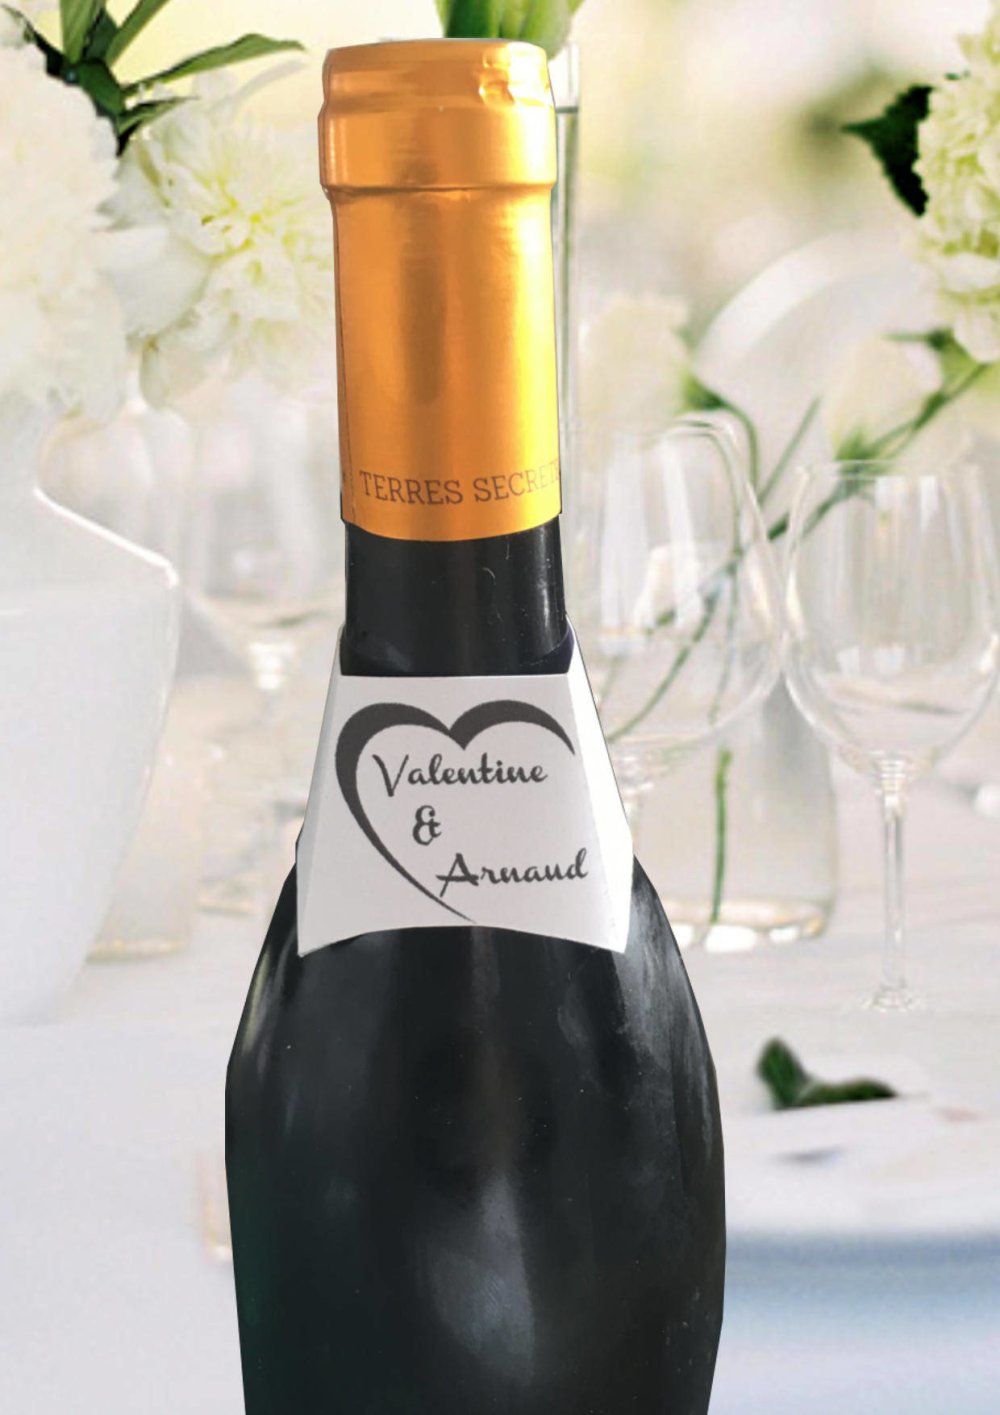 Etiquette autocollante bouteille de vin ou champagne pour mariage, baptême,  fête - photo